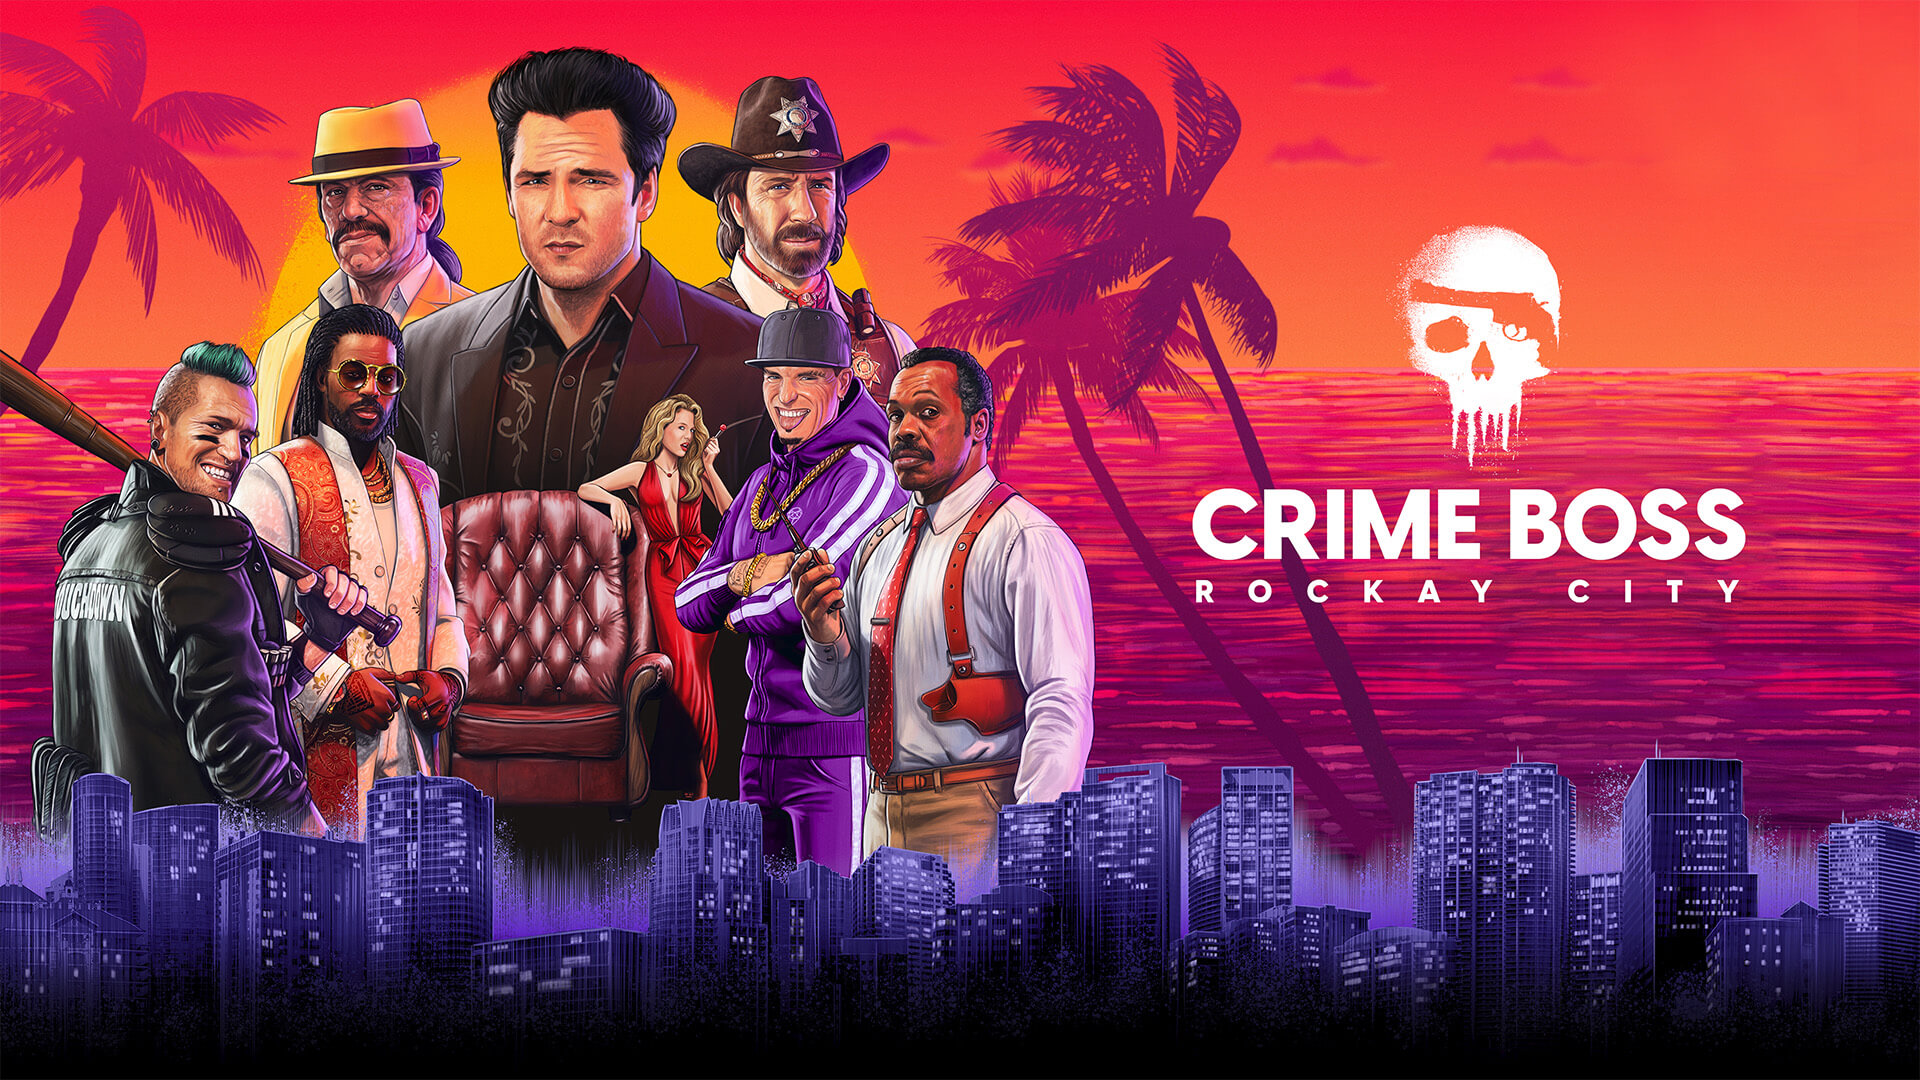 Sammle in Crime Boss: Rockay City eine Ladung "Süßigkeiten" Titel